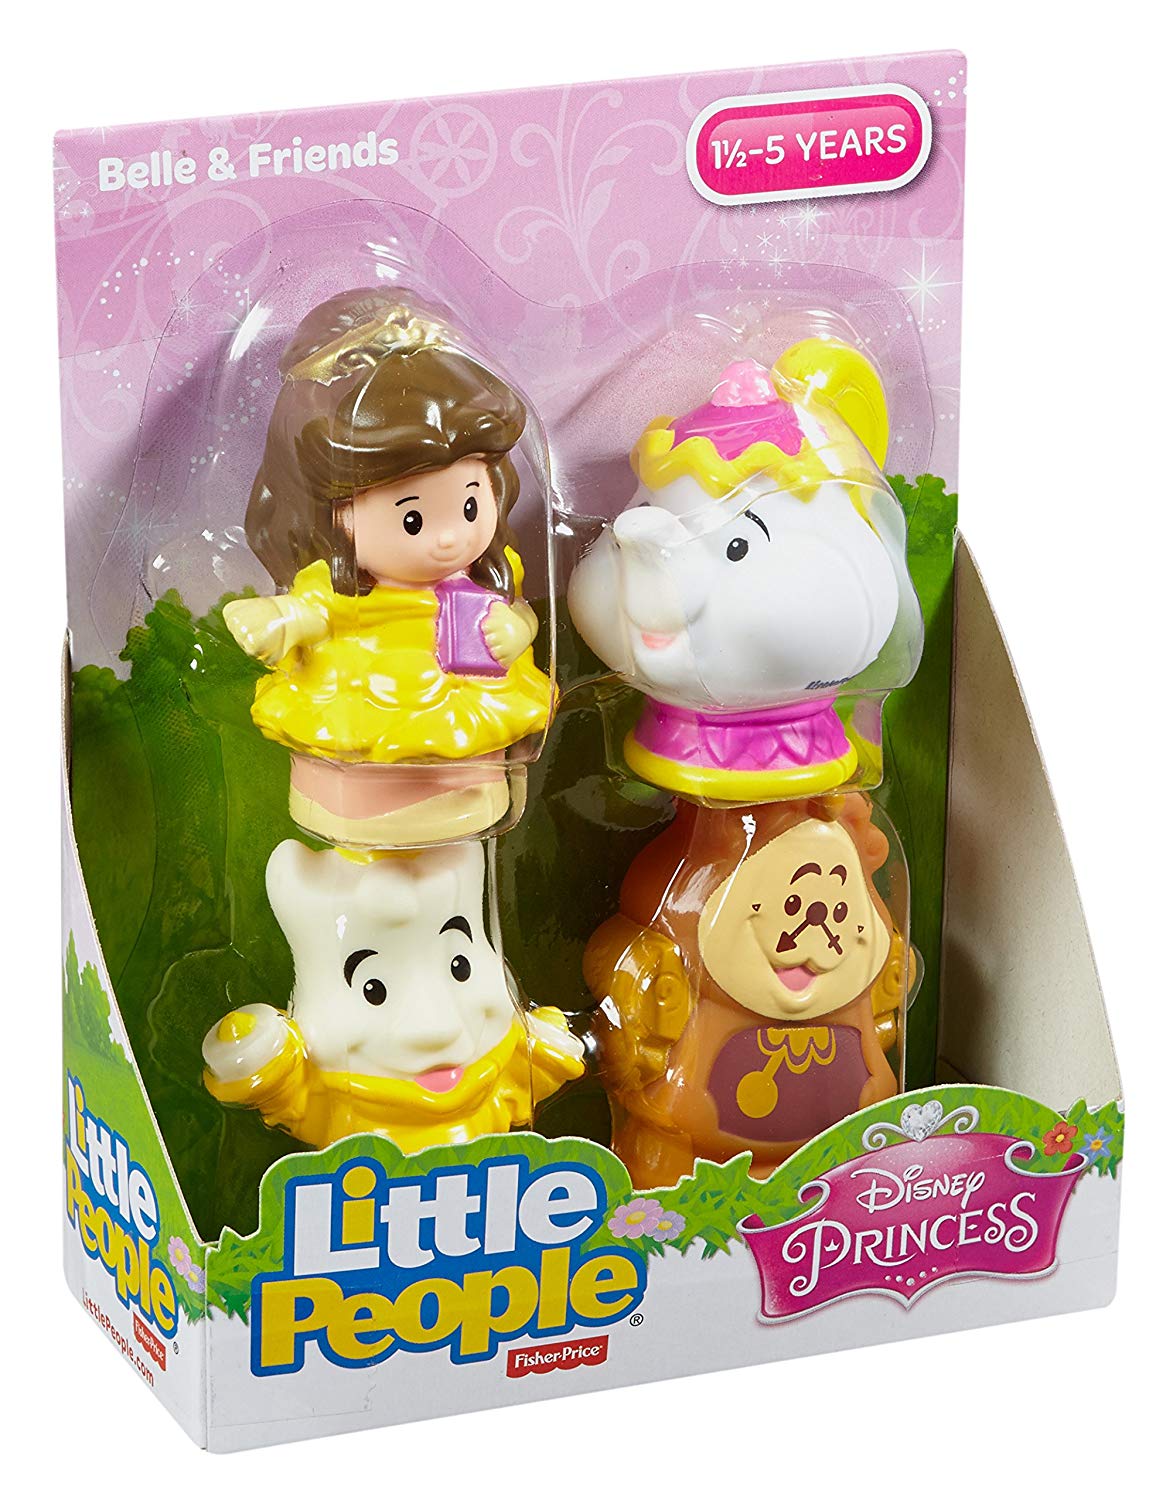 FisherPrice Little People Disney Princess Belle & Friends